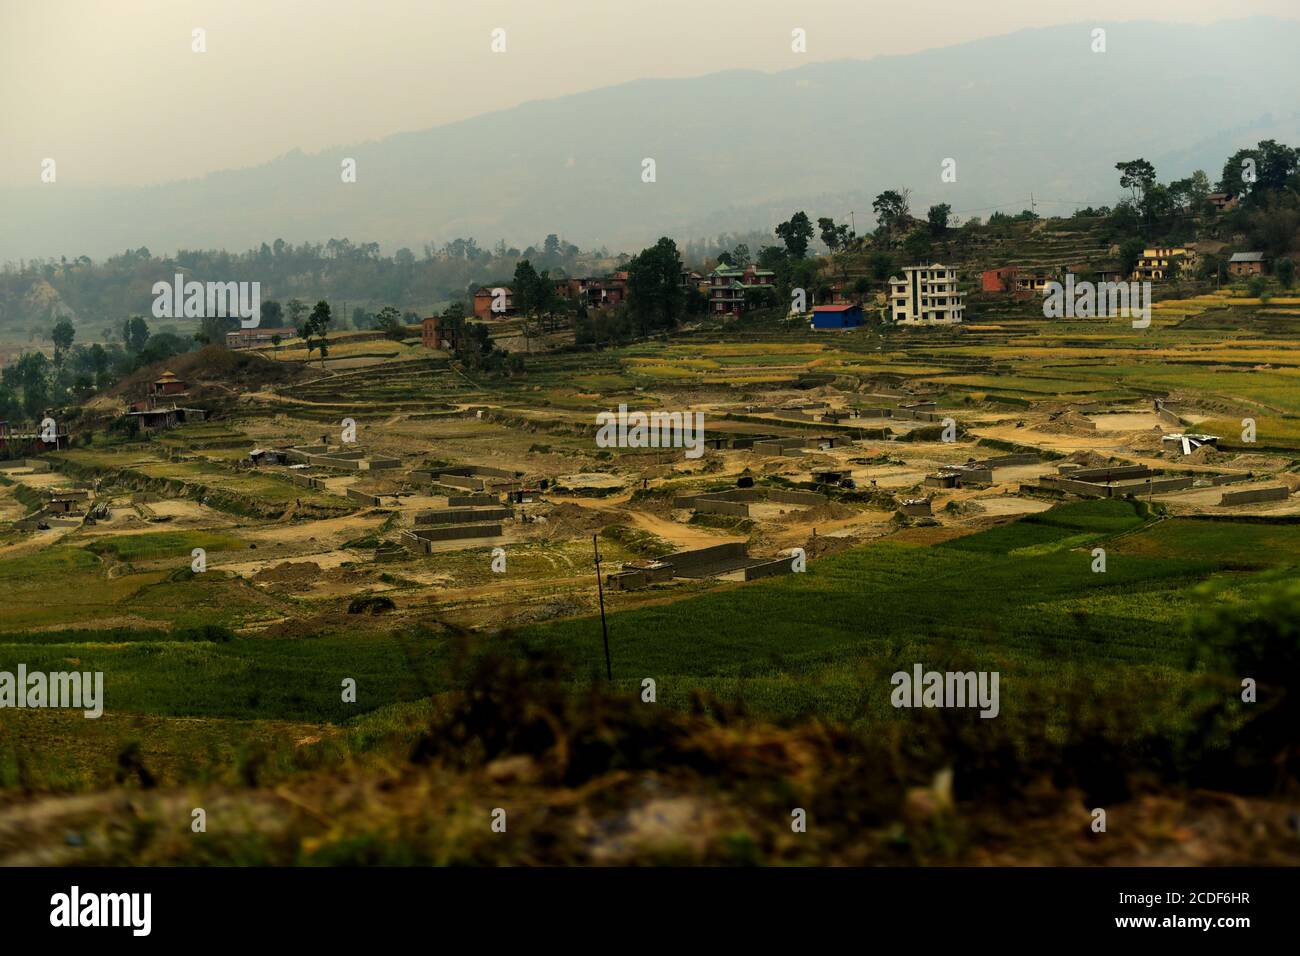 Conversione di campi agricoli in fabbrica di materiali da costruzione alla periferia di Kathmandu, Nepal. Foto Stock